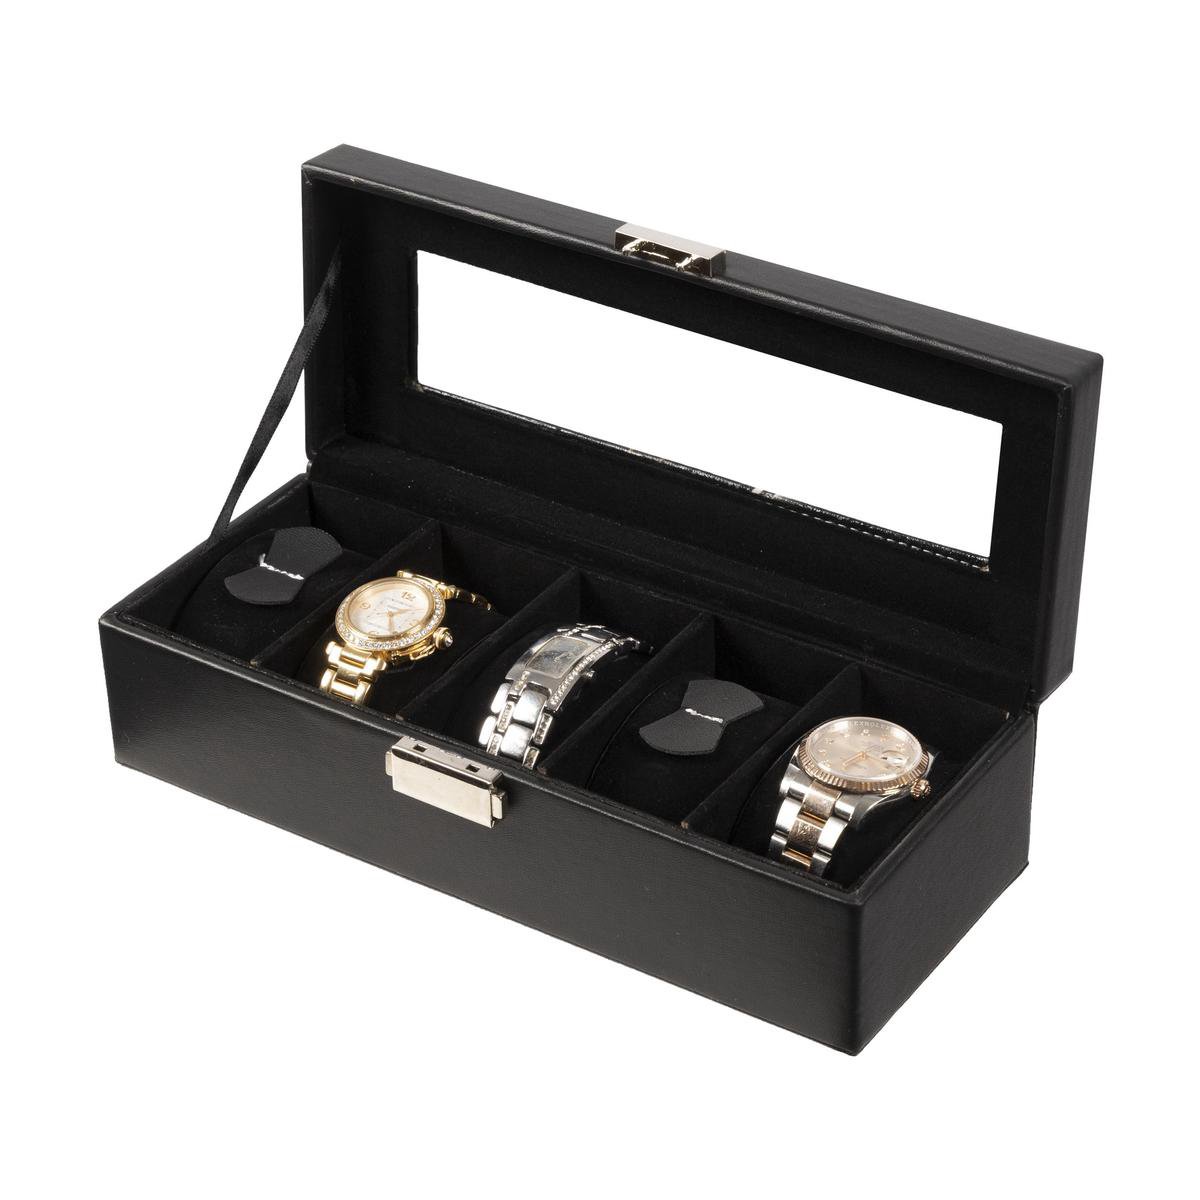 Deluxa Horlogebox - Horlogedoos - Voor 5 horloges - Zwart - Déluxa